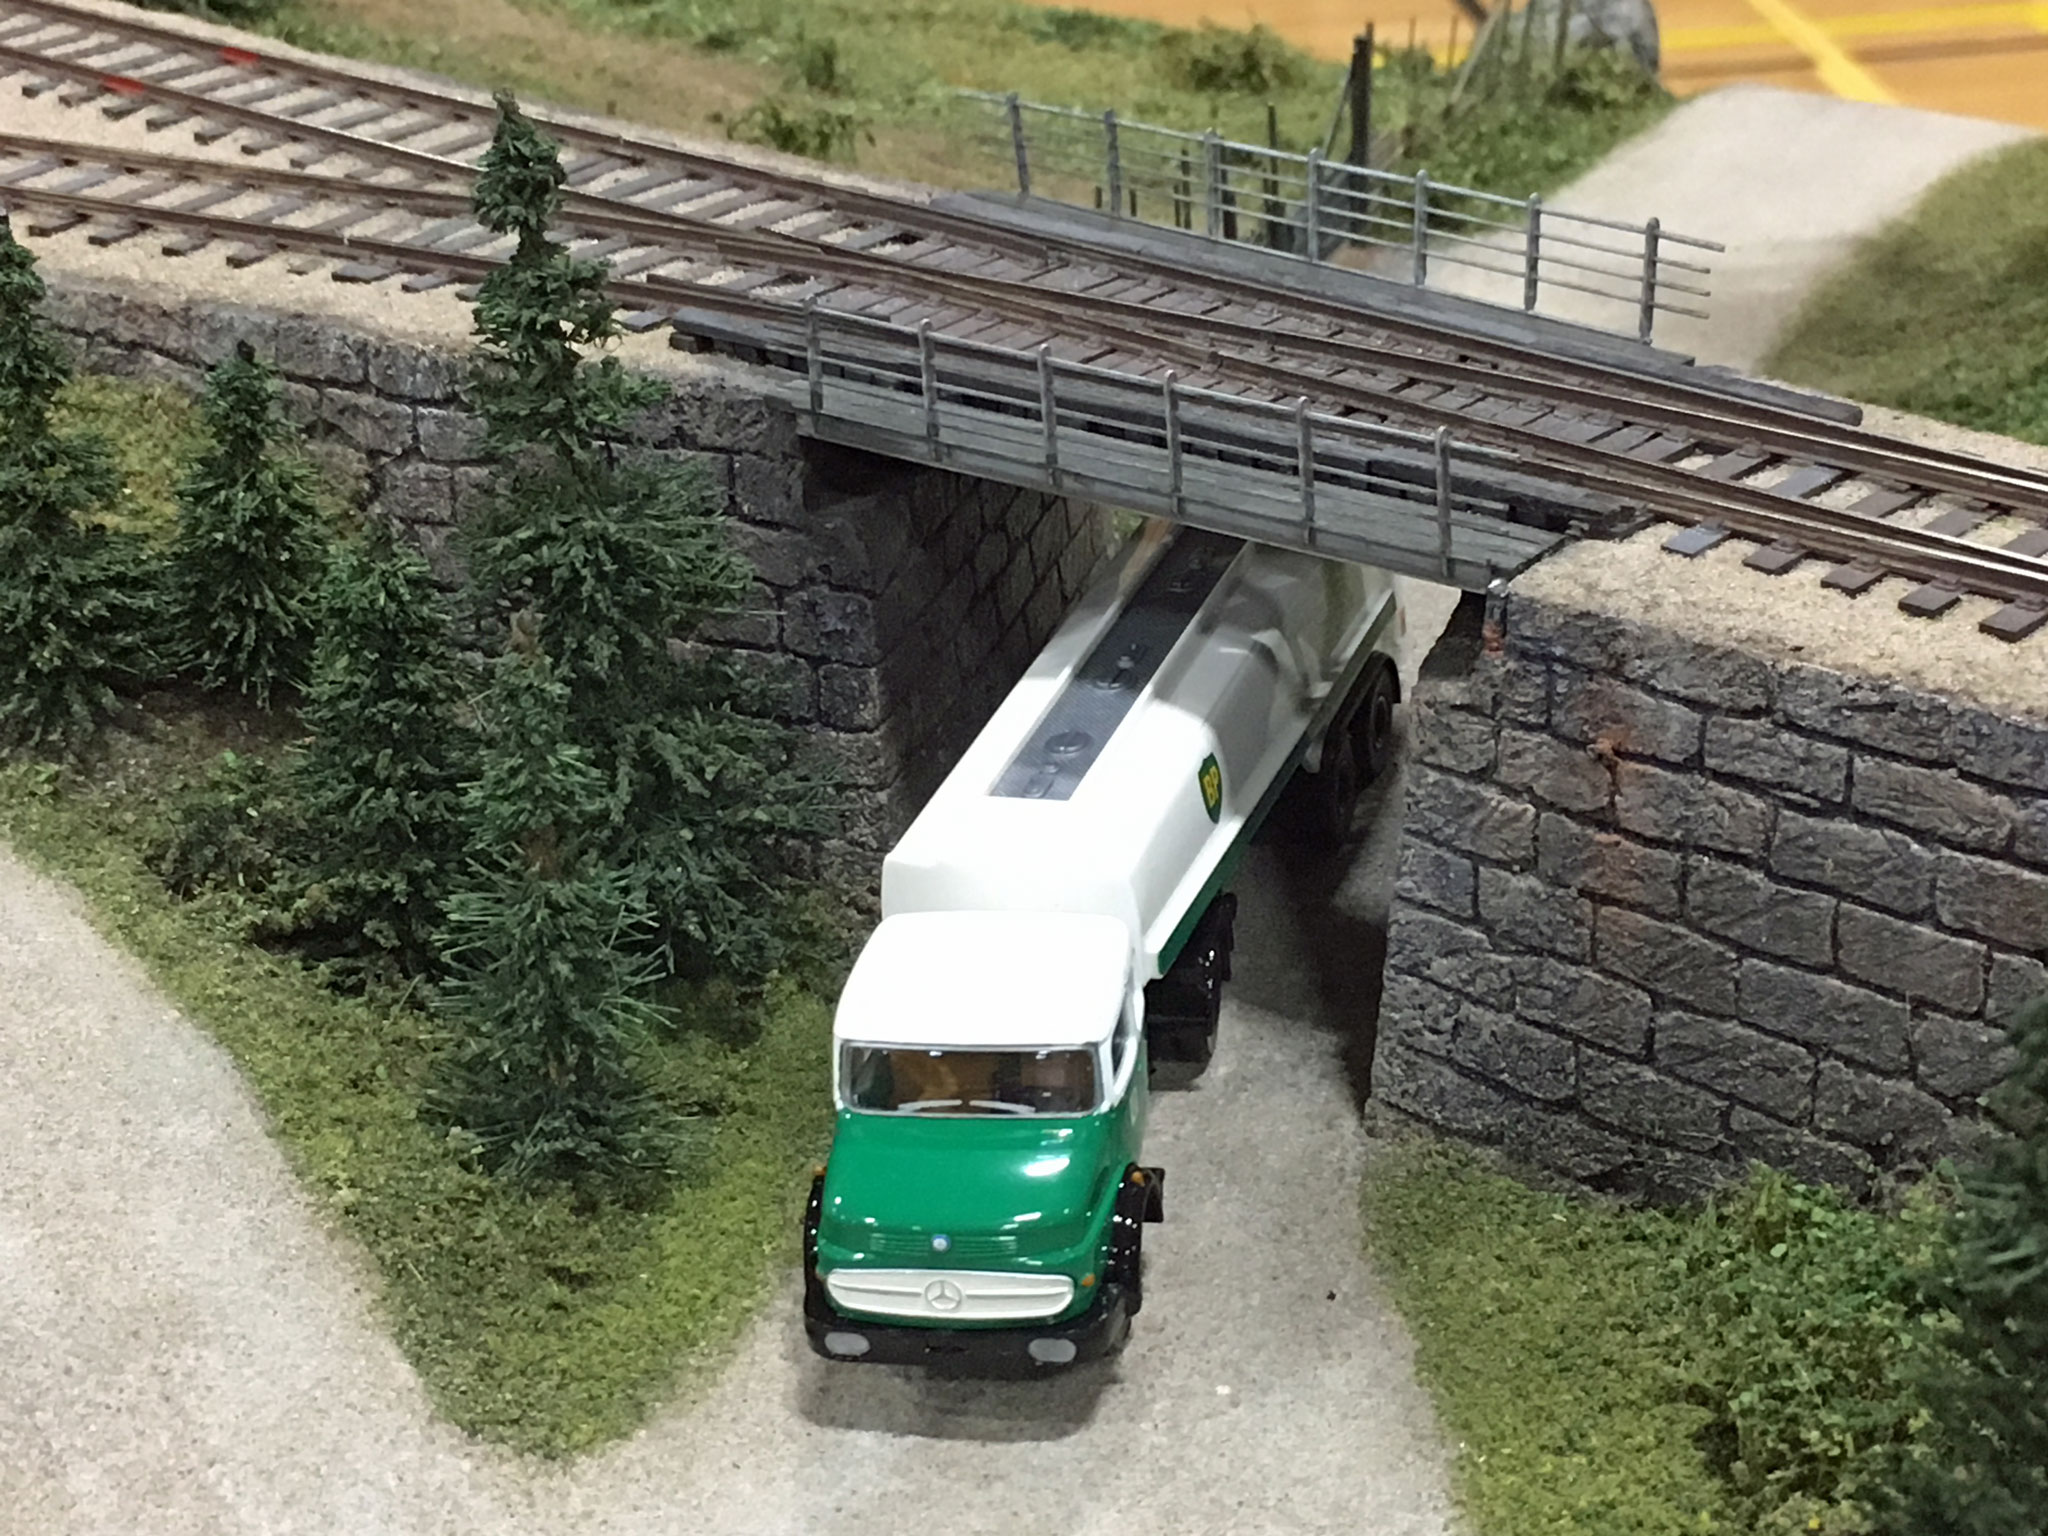 Broen med tankbilen fotograferet fra oven afslører et sporskifte på selve broen